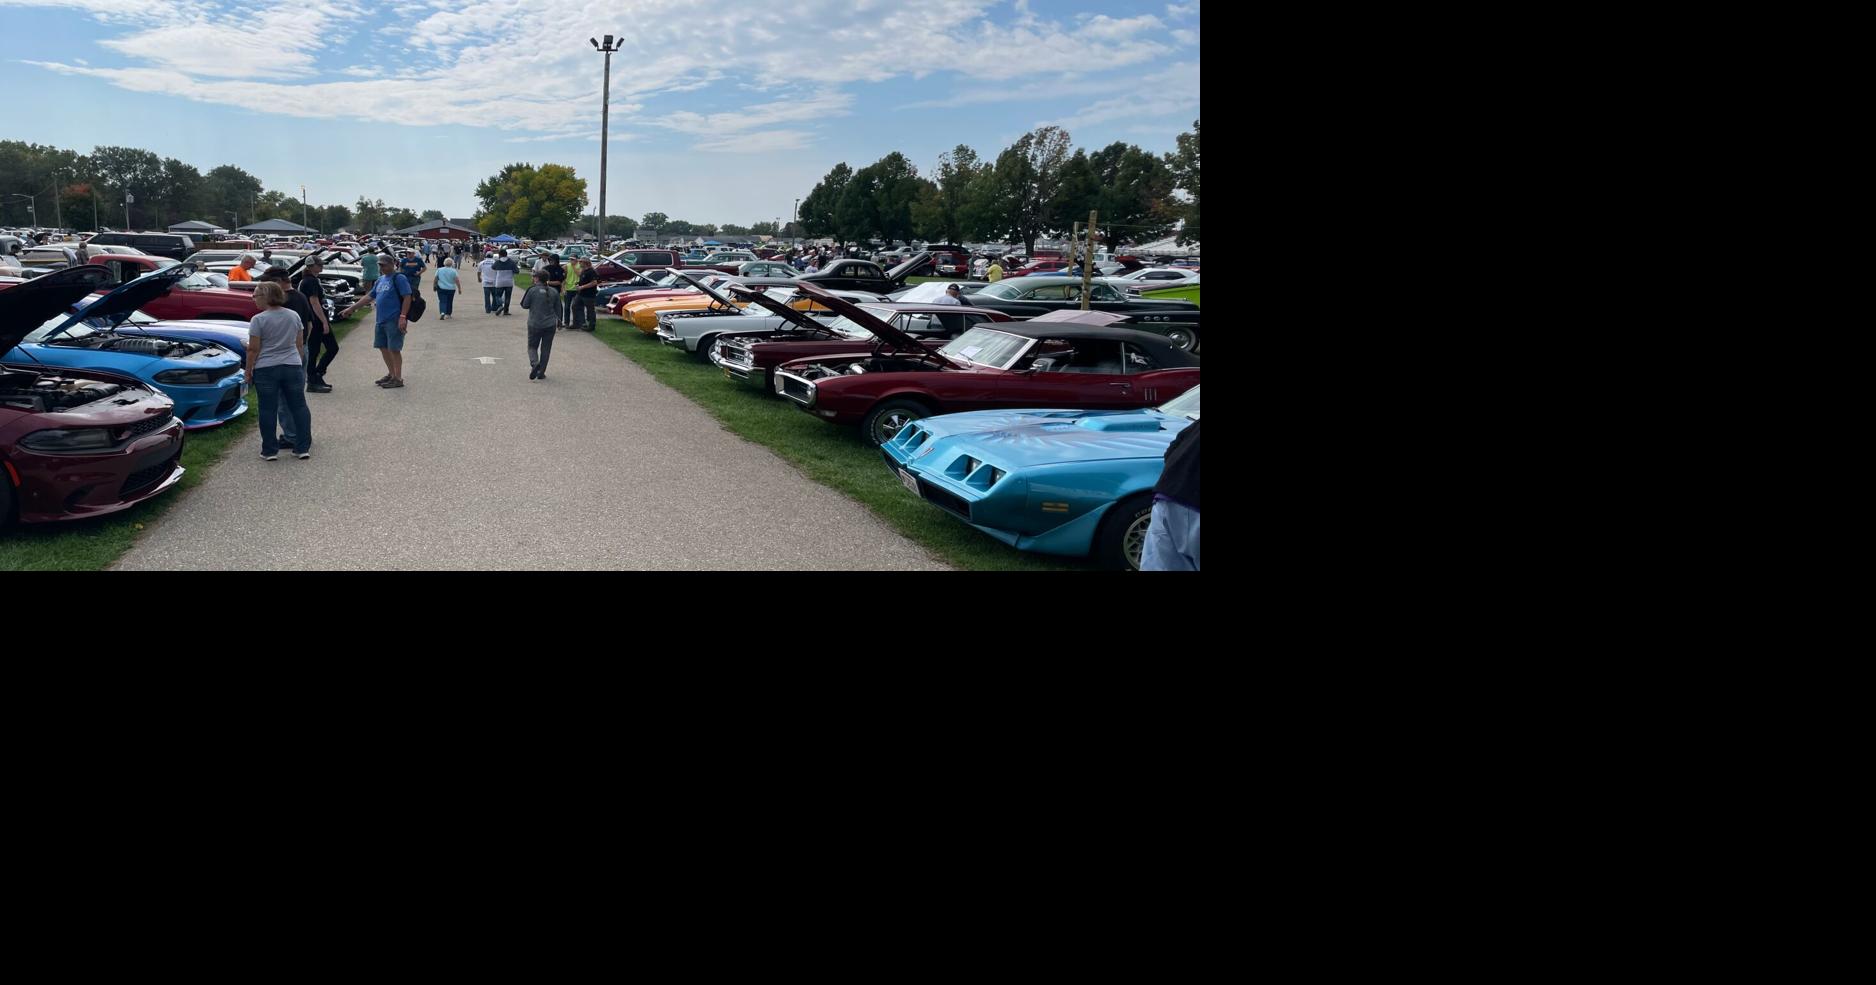 46th annual Fall Jefferson Swap Meet & Car Show News